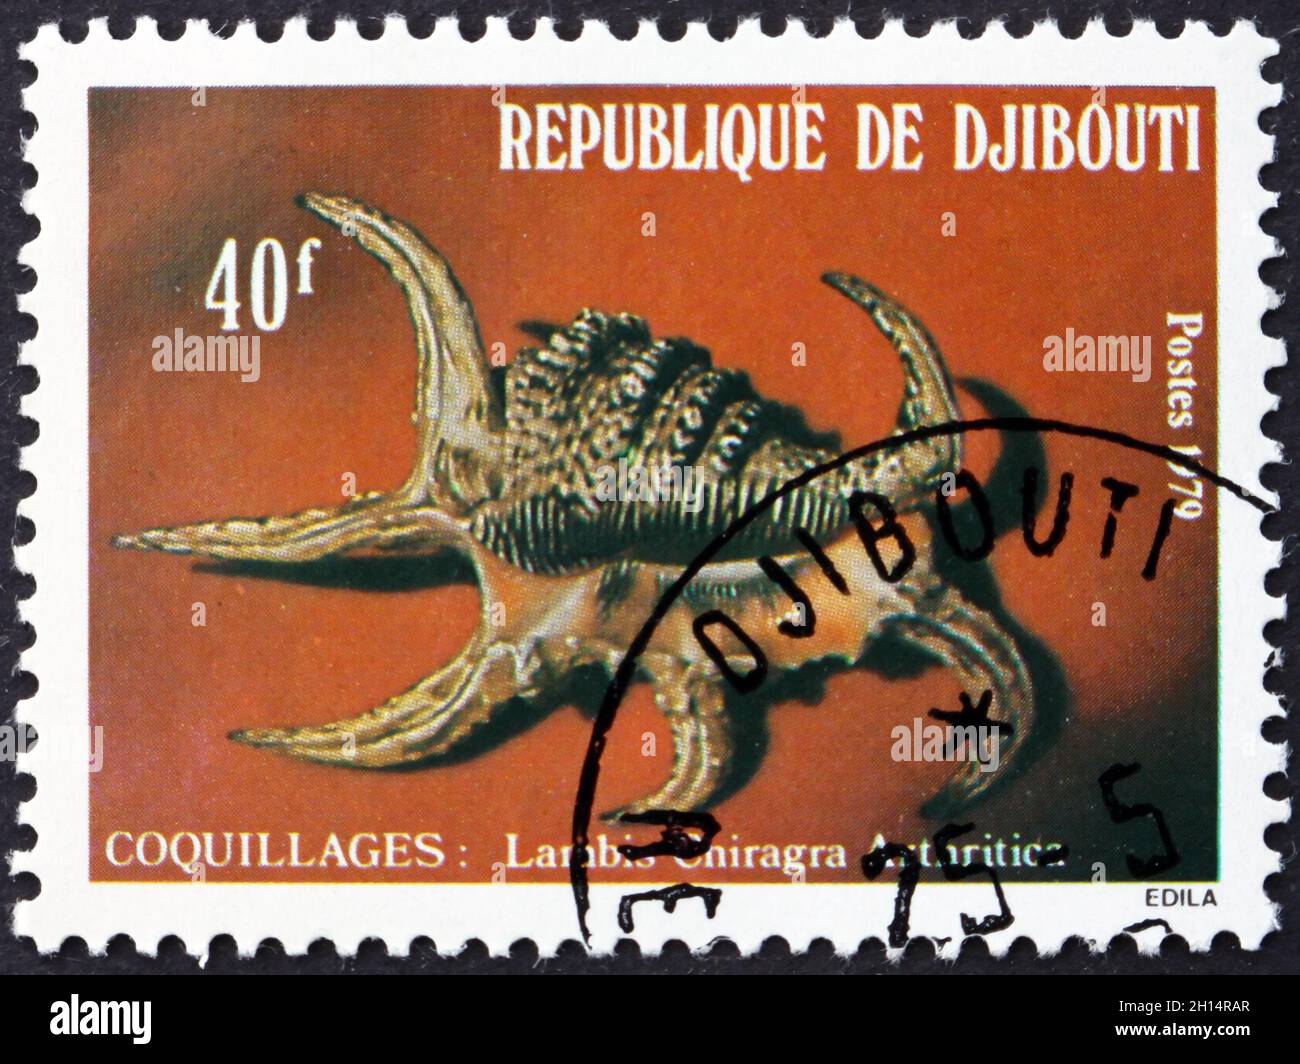 DJIBOUTI - CIRCA 1979: a stamp printed in Djibouti shows Arthritic spider conch, lambis chiragra arthritica, sea snail, circa 1979 Stock Photo